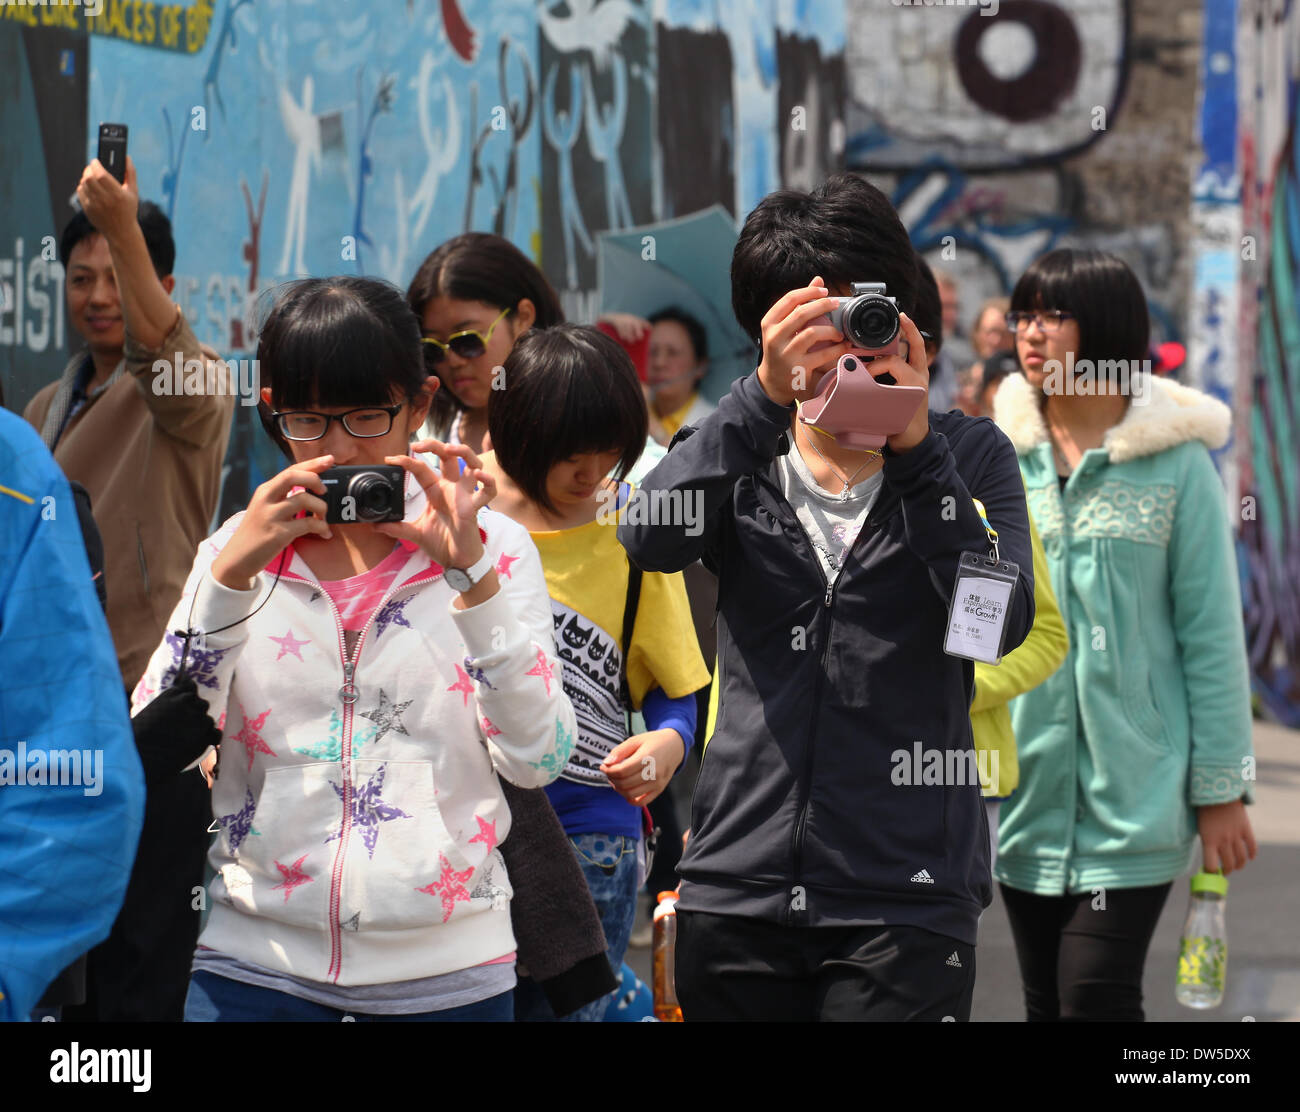 Eine Gruppe von asiatischen Touristen fotografieren an der East Side Gallery in Berlin, 13. Juli 2013. Jedes Jahr kommen immer mehr Touristen in die deutsche Hauptstadt. Das Foto ist Teil einer Serie über den Tourismus in Berlin. Foto. Wolfram Steinberg dpa Stockfoto